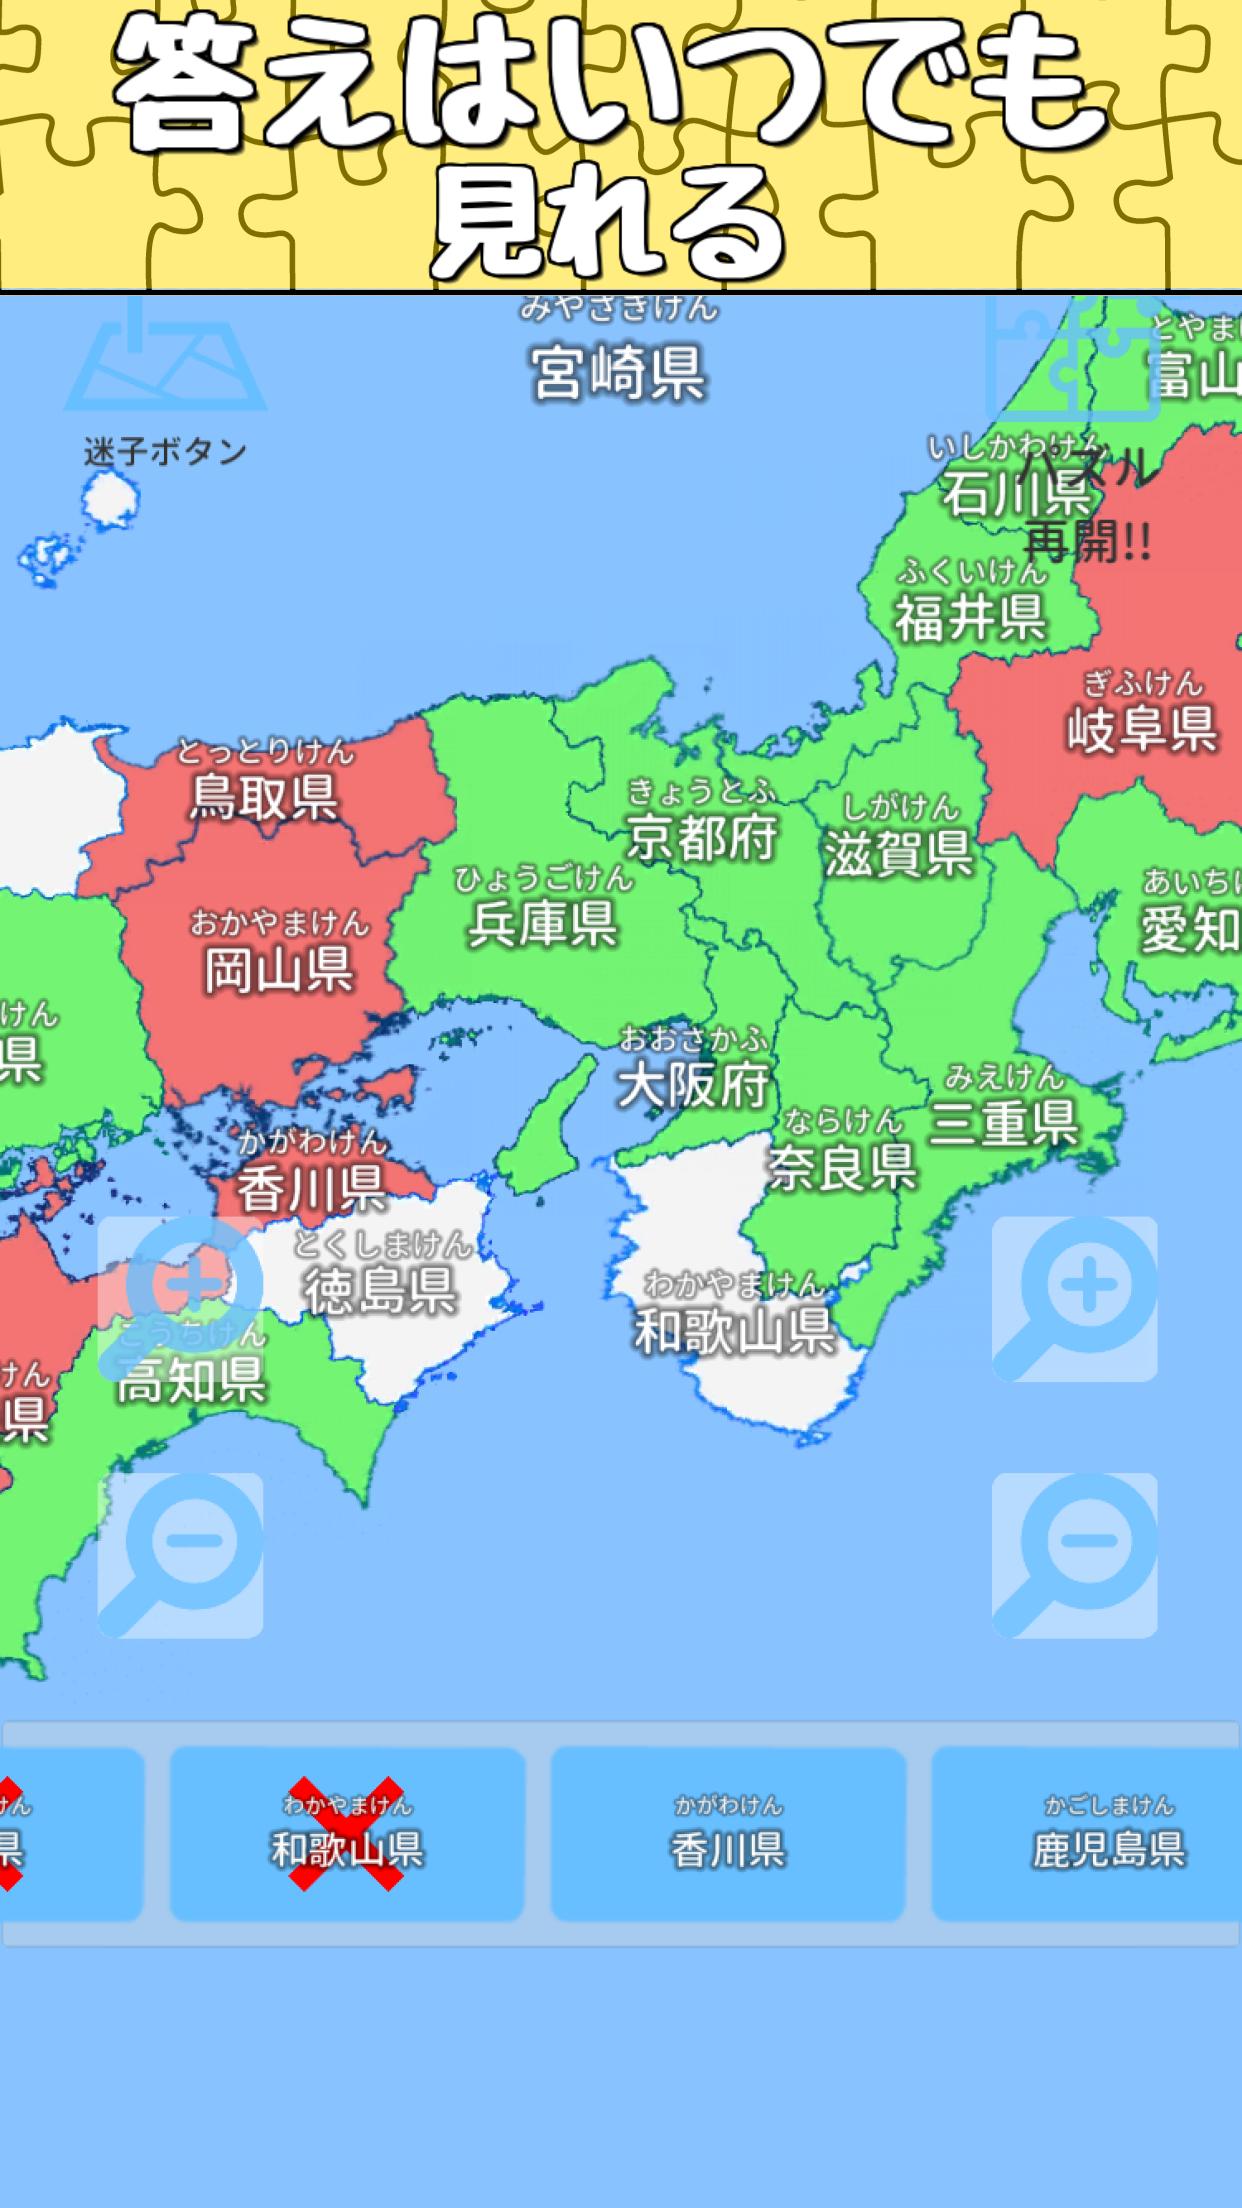 日本地名パズル 都道府県 県庁所在地 市区町村が遊べる日本地図パズル For Android Apk Download